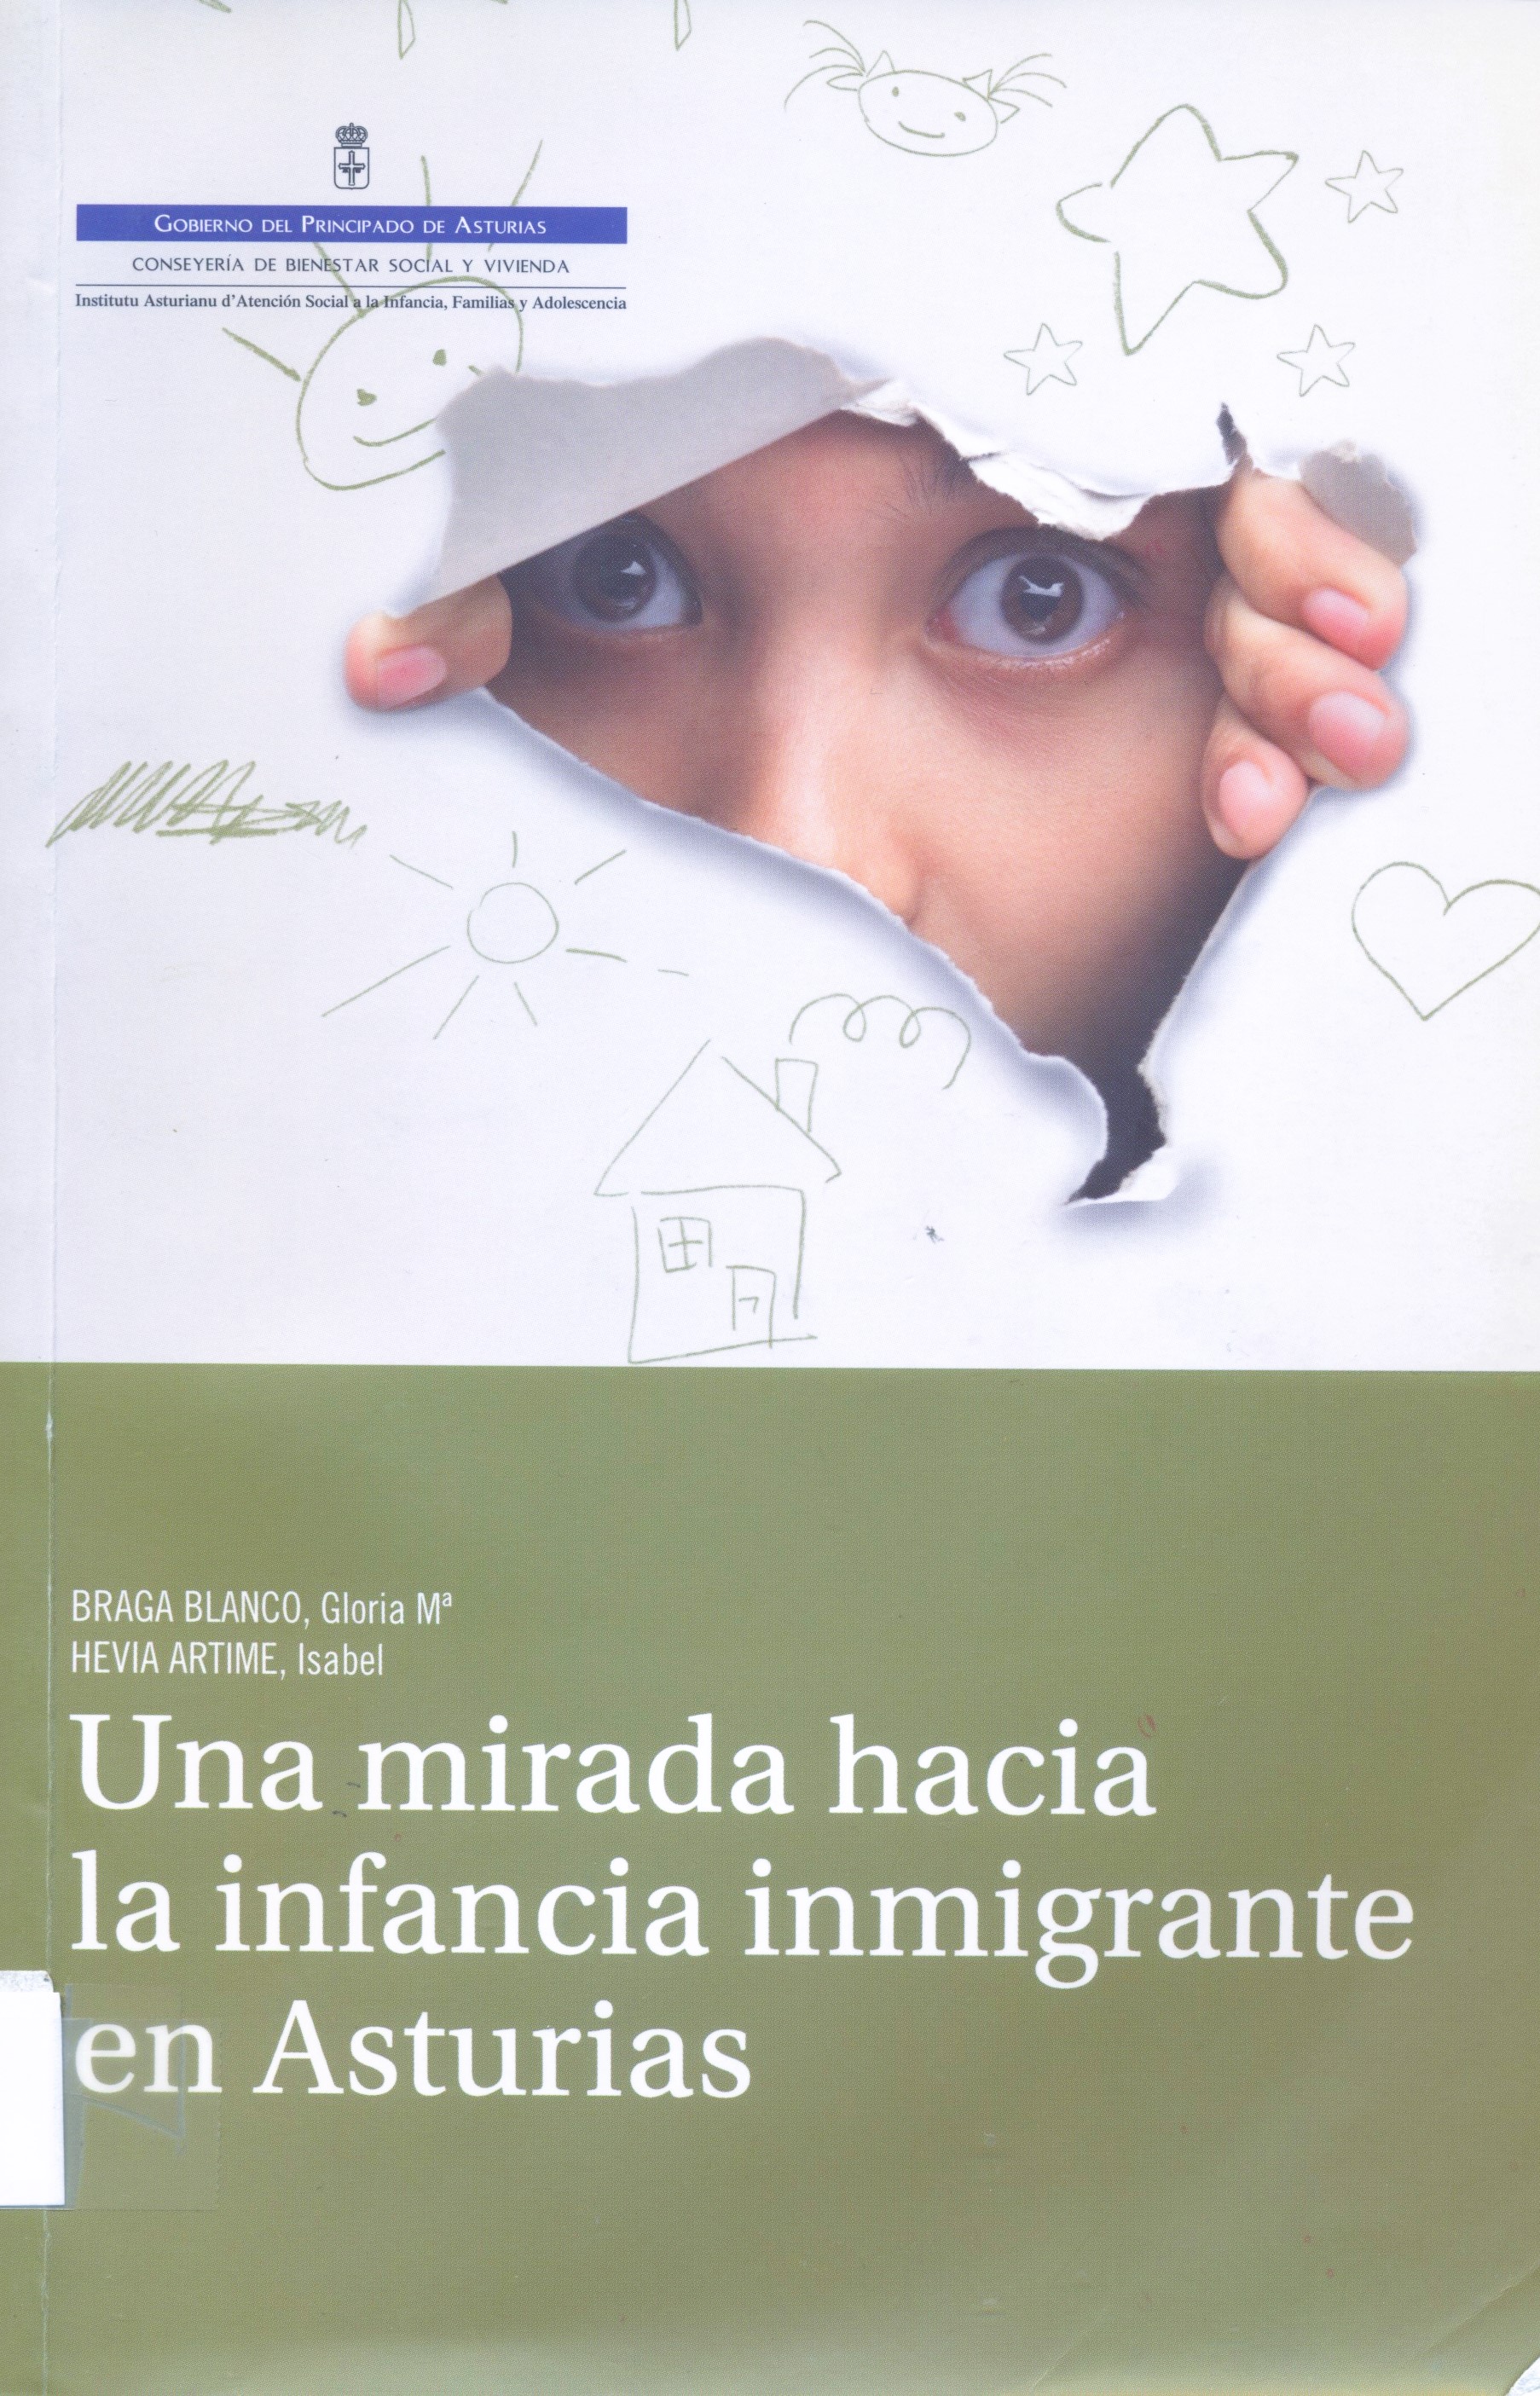 Imagen de portada del libro Una mirada hacia la infancia inmigrante en Asturias